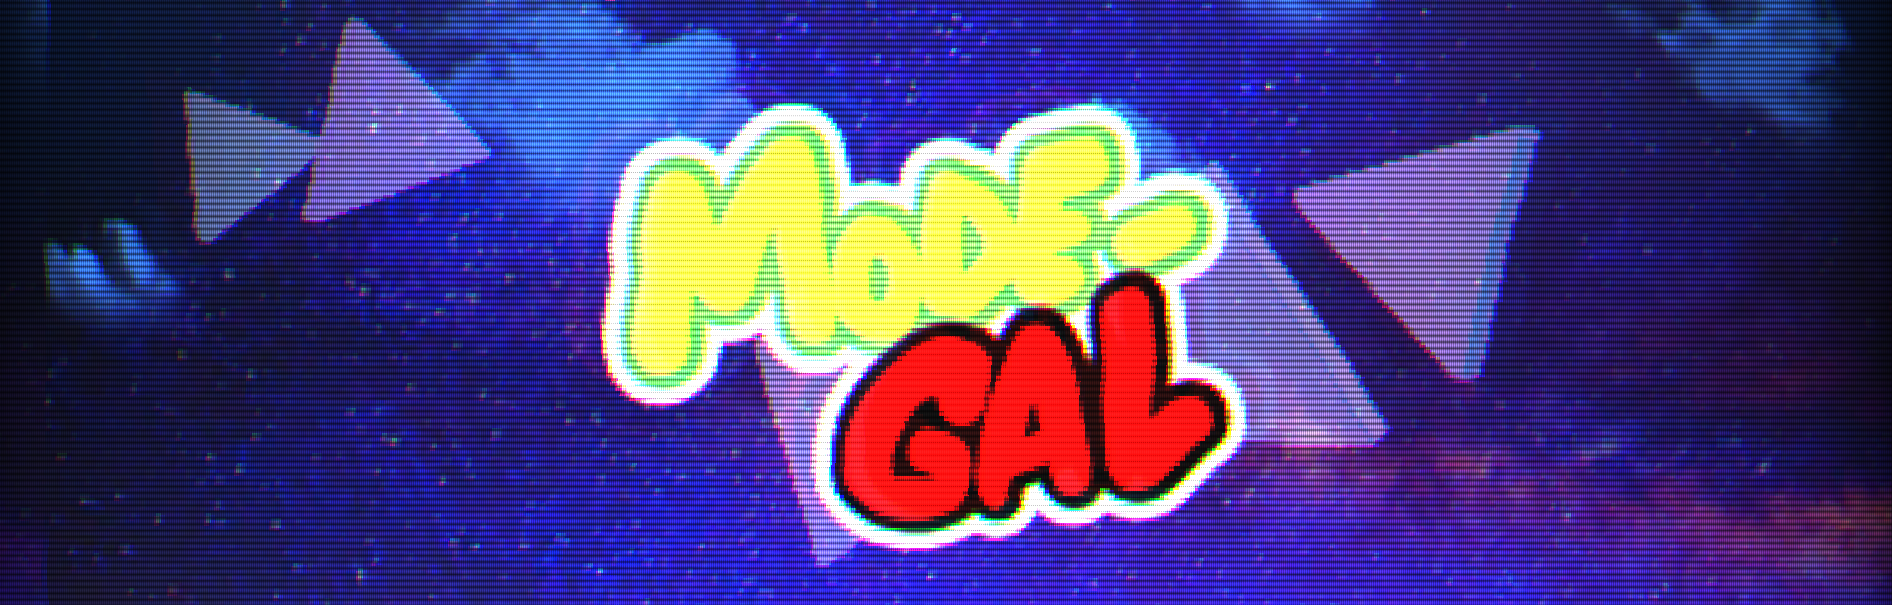 MODE-GAL